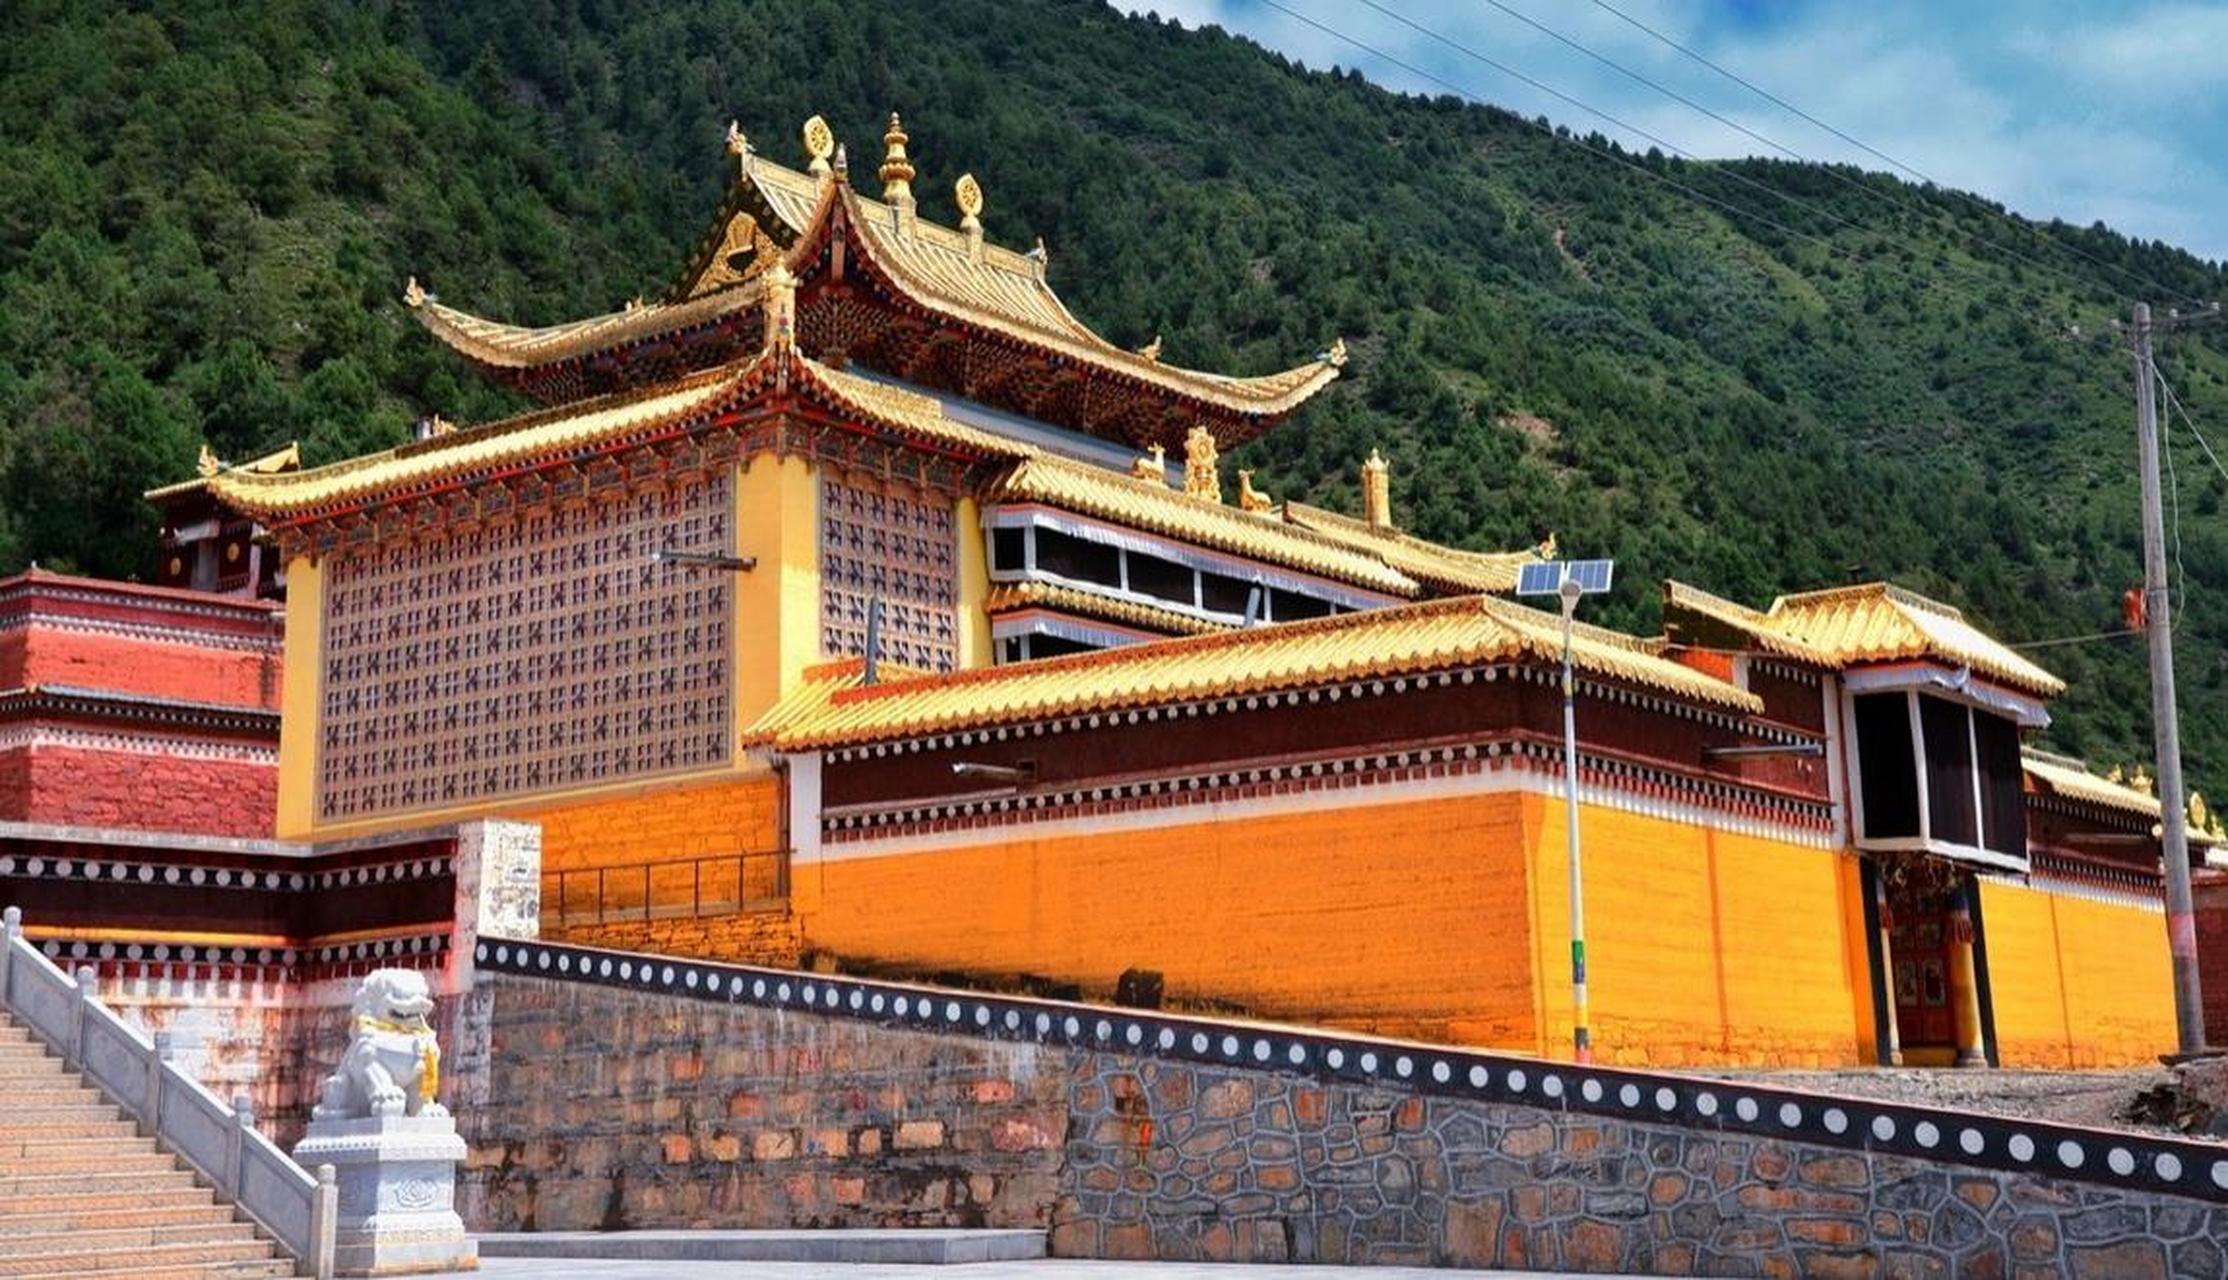 贡巴寺位于甘南卓尼县城刀告乡,藏语称噶丹扎西桑珠林,始建于一八